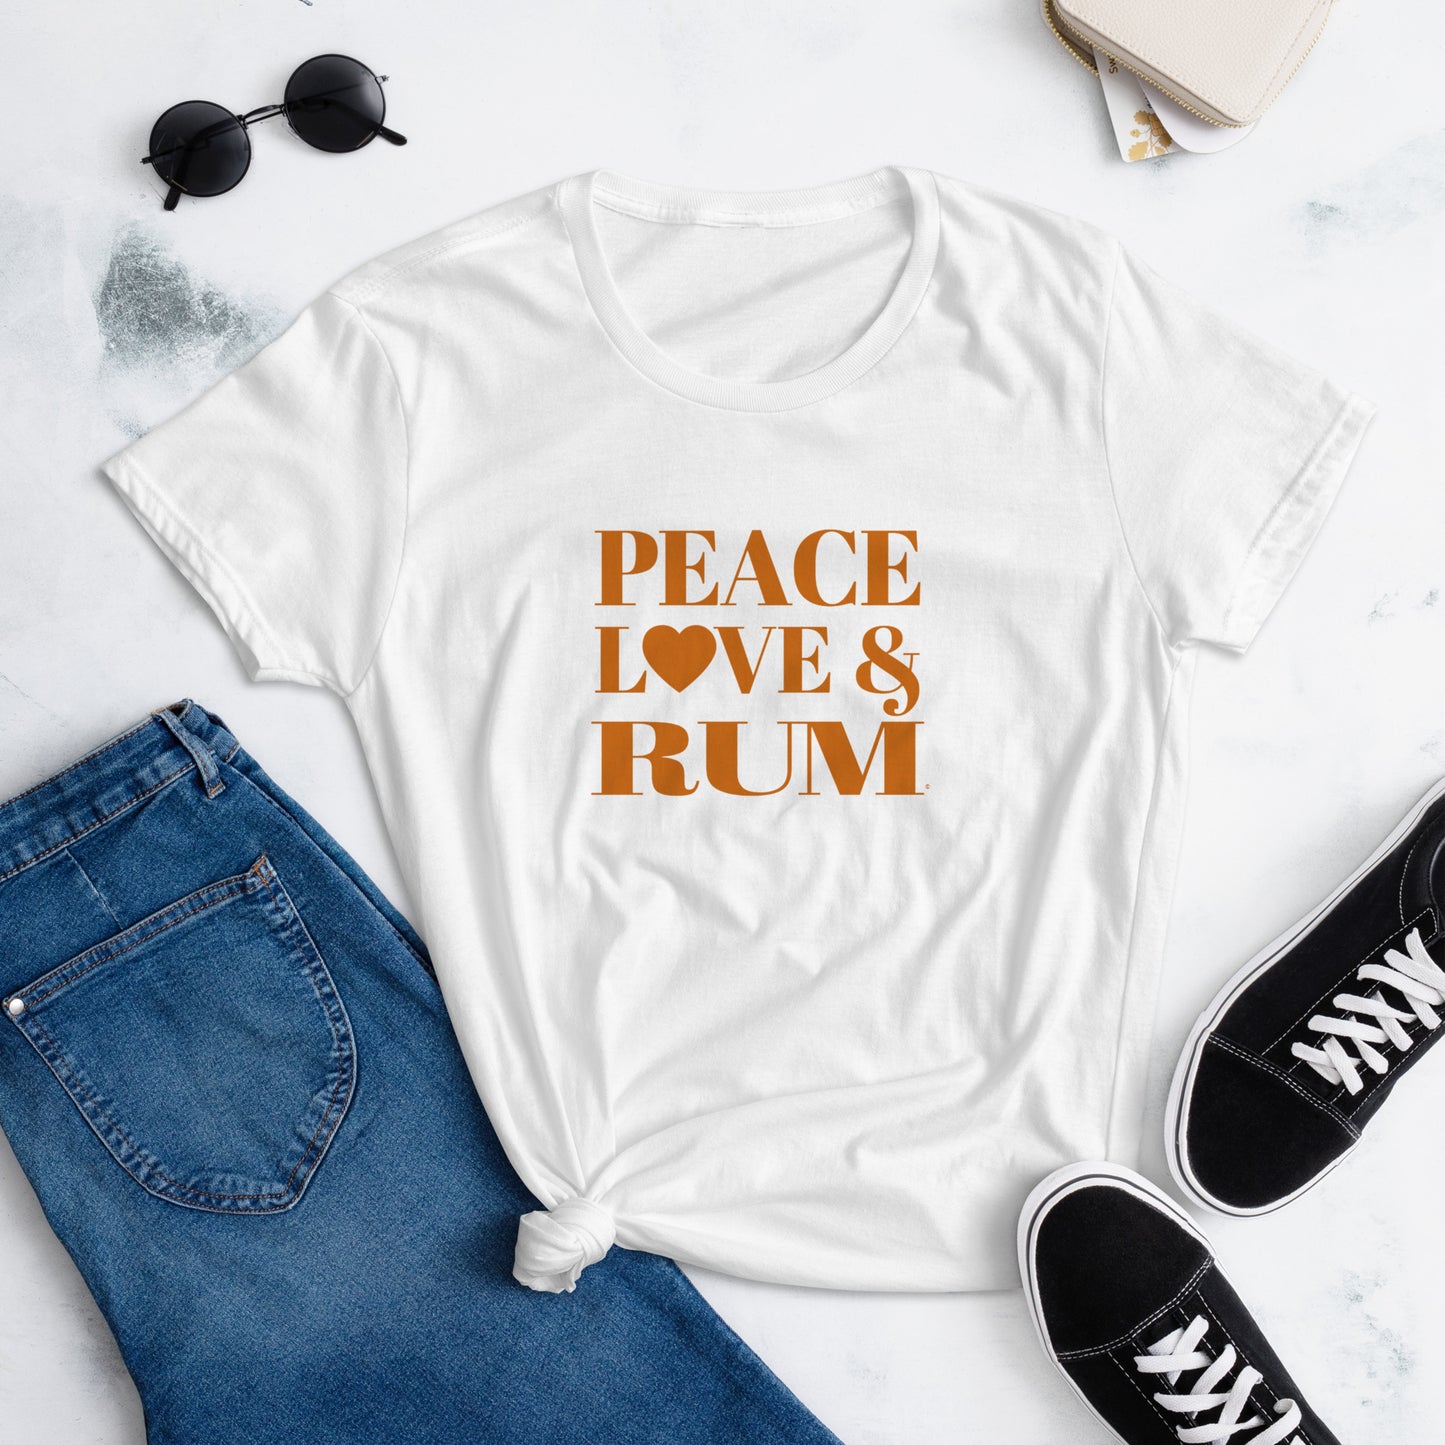 Peace, Love & Rum Women's short sleeve t-shirt